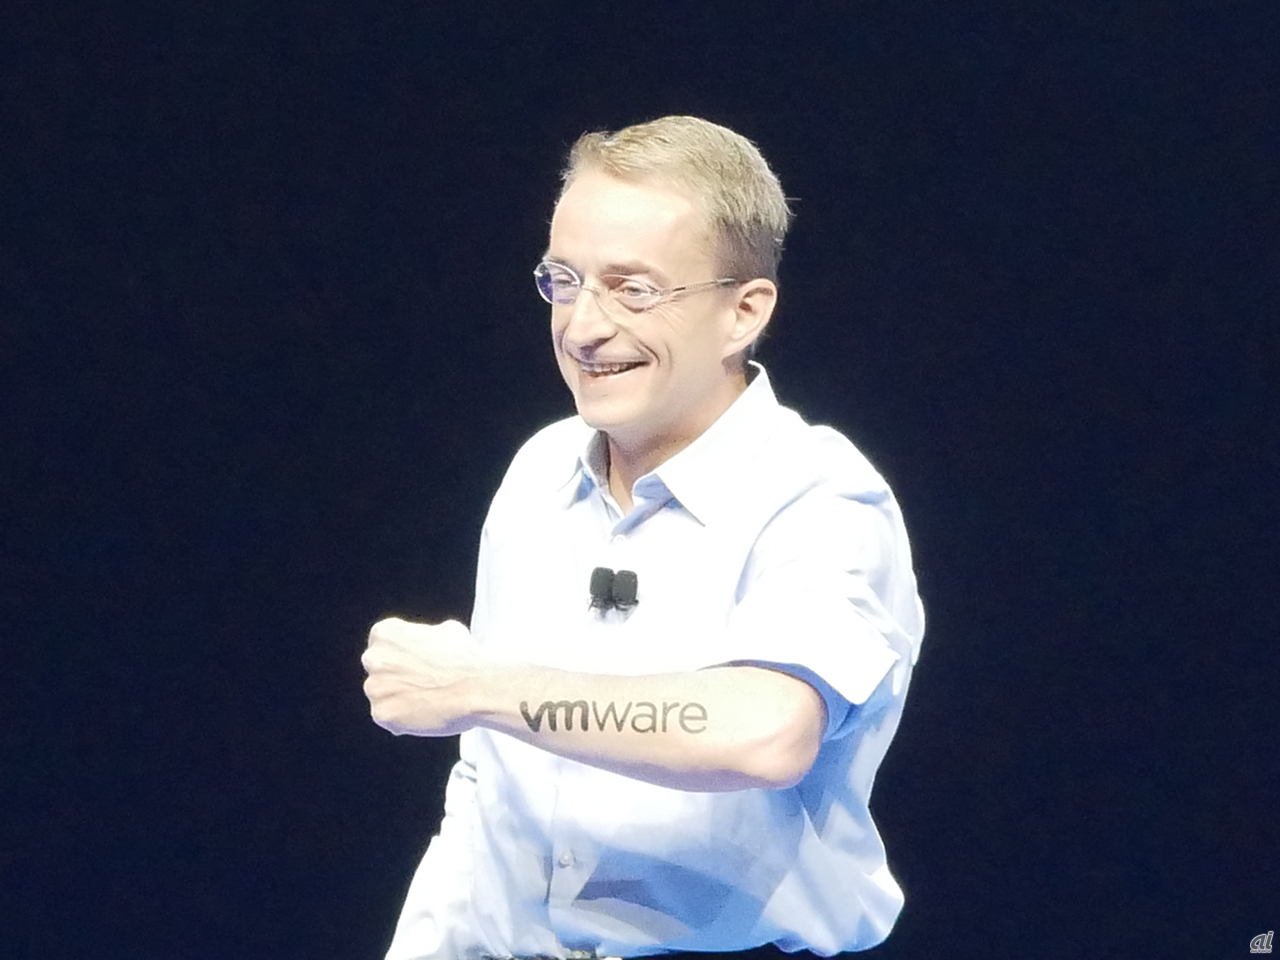 「VMware」のロゴのタトゥーを左腕に入れたことを披露するGelsinger CEO